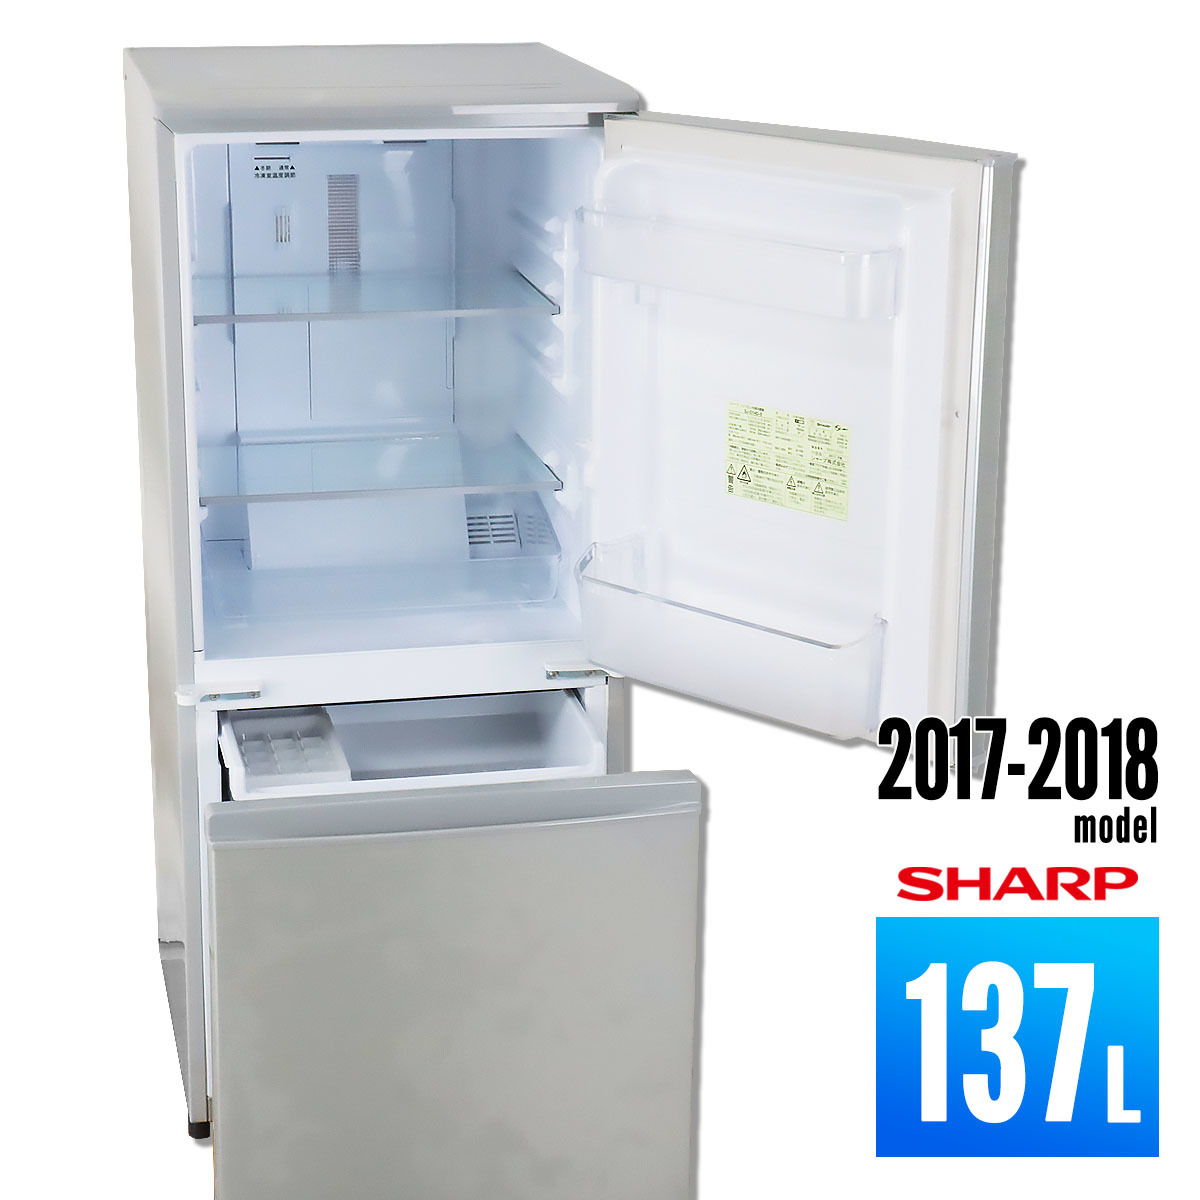 楽天市場 送料無料 2017 中古 SHARP 137L 冷蔵庫